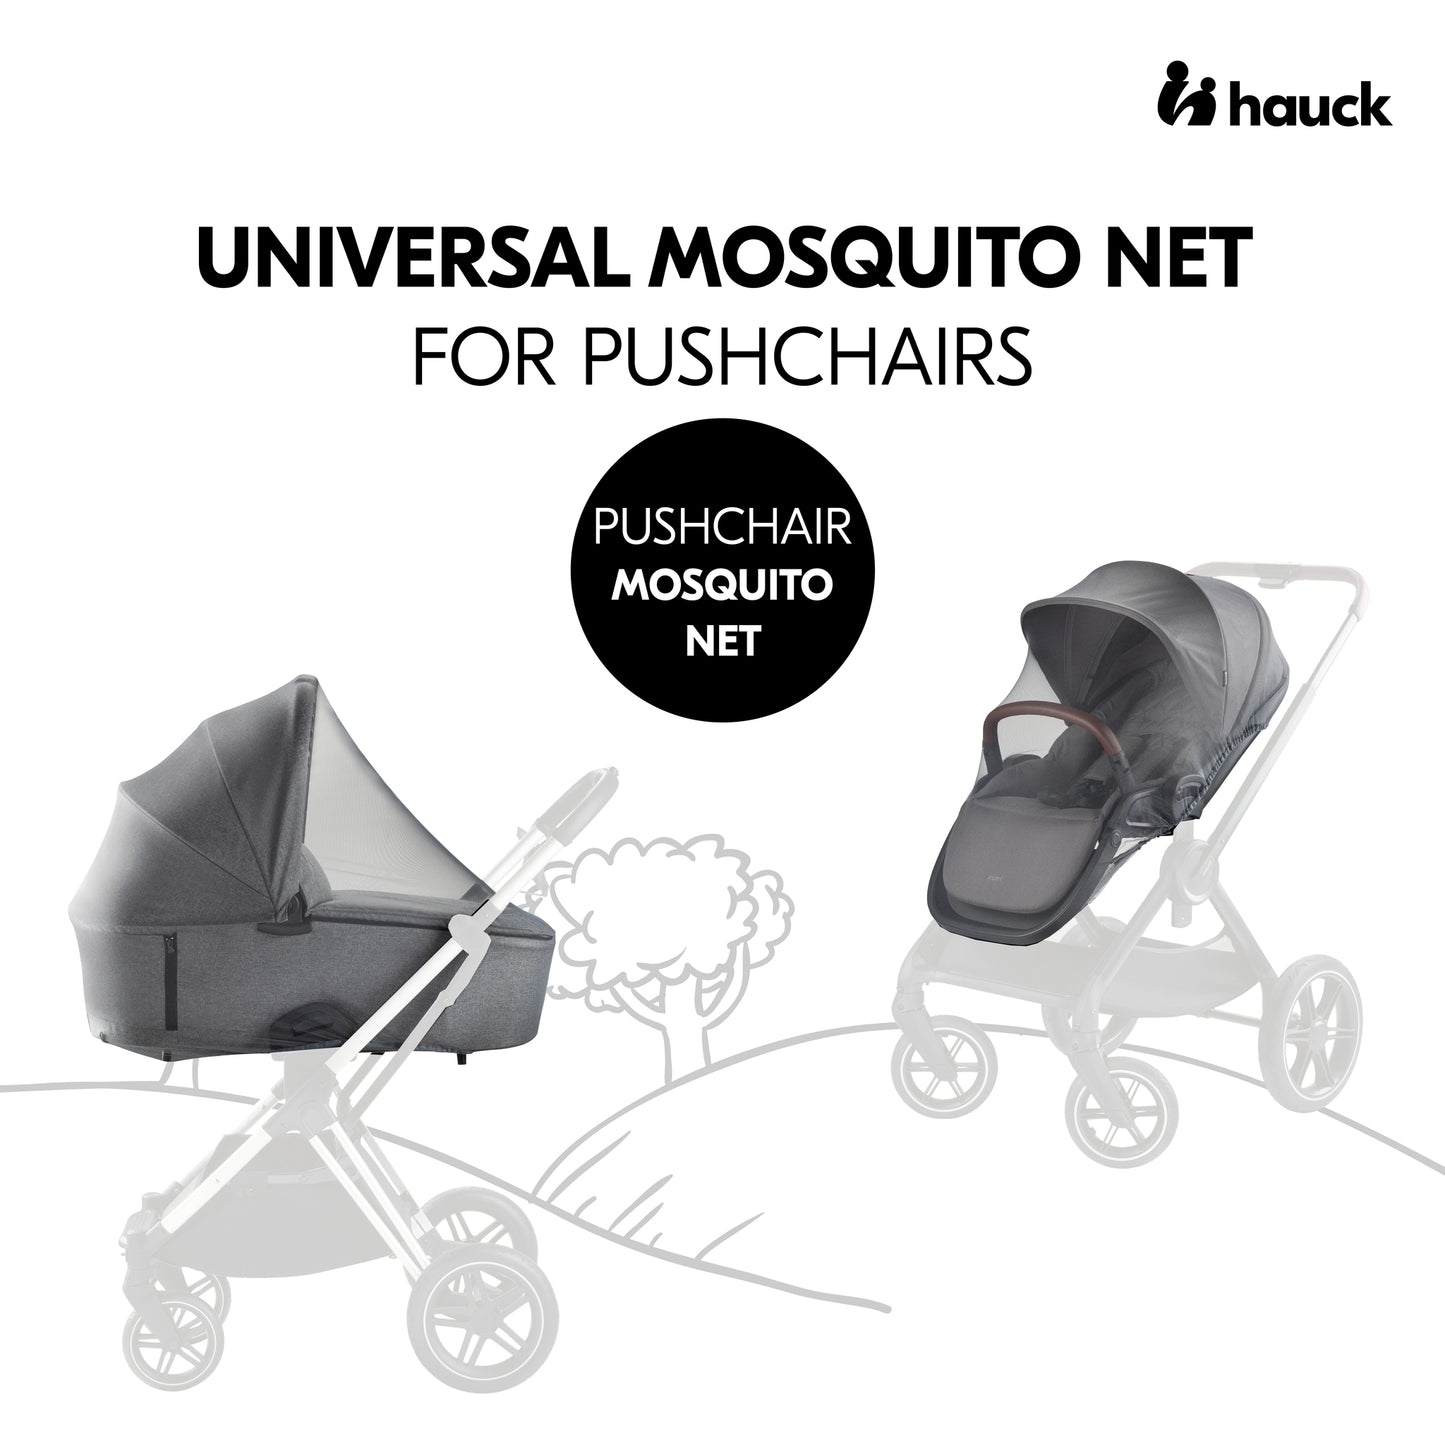 Pushchair Mosquito Net